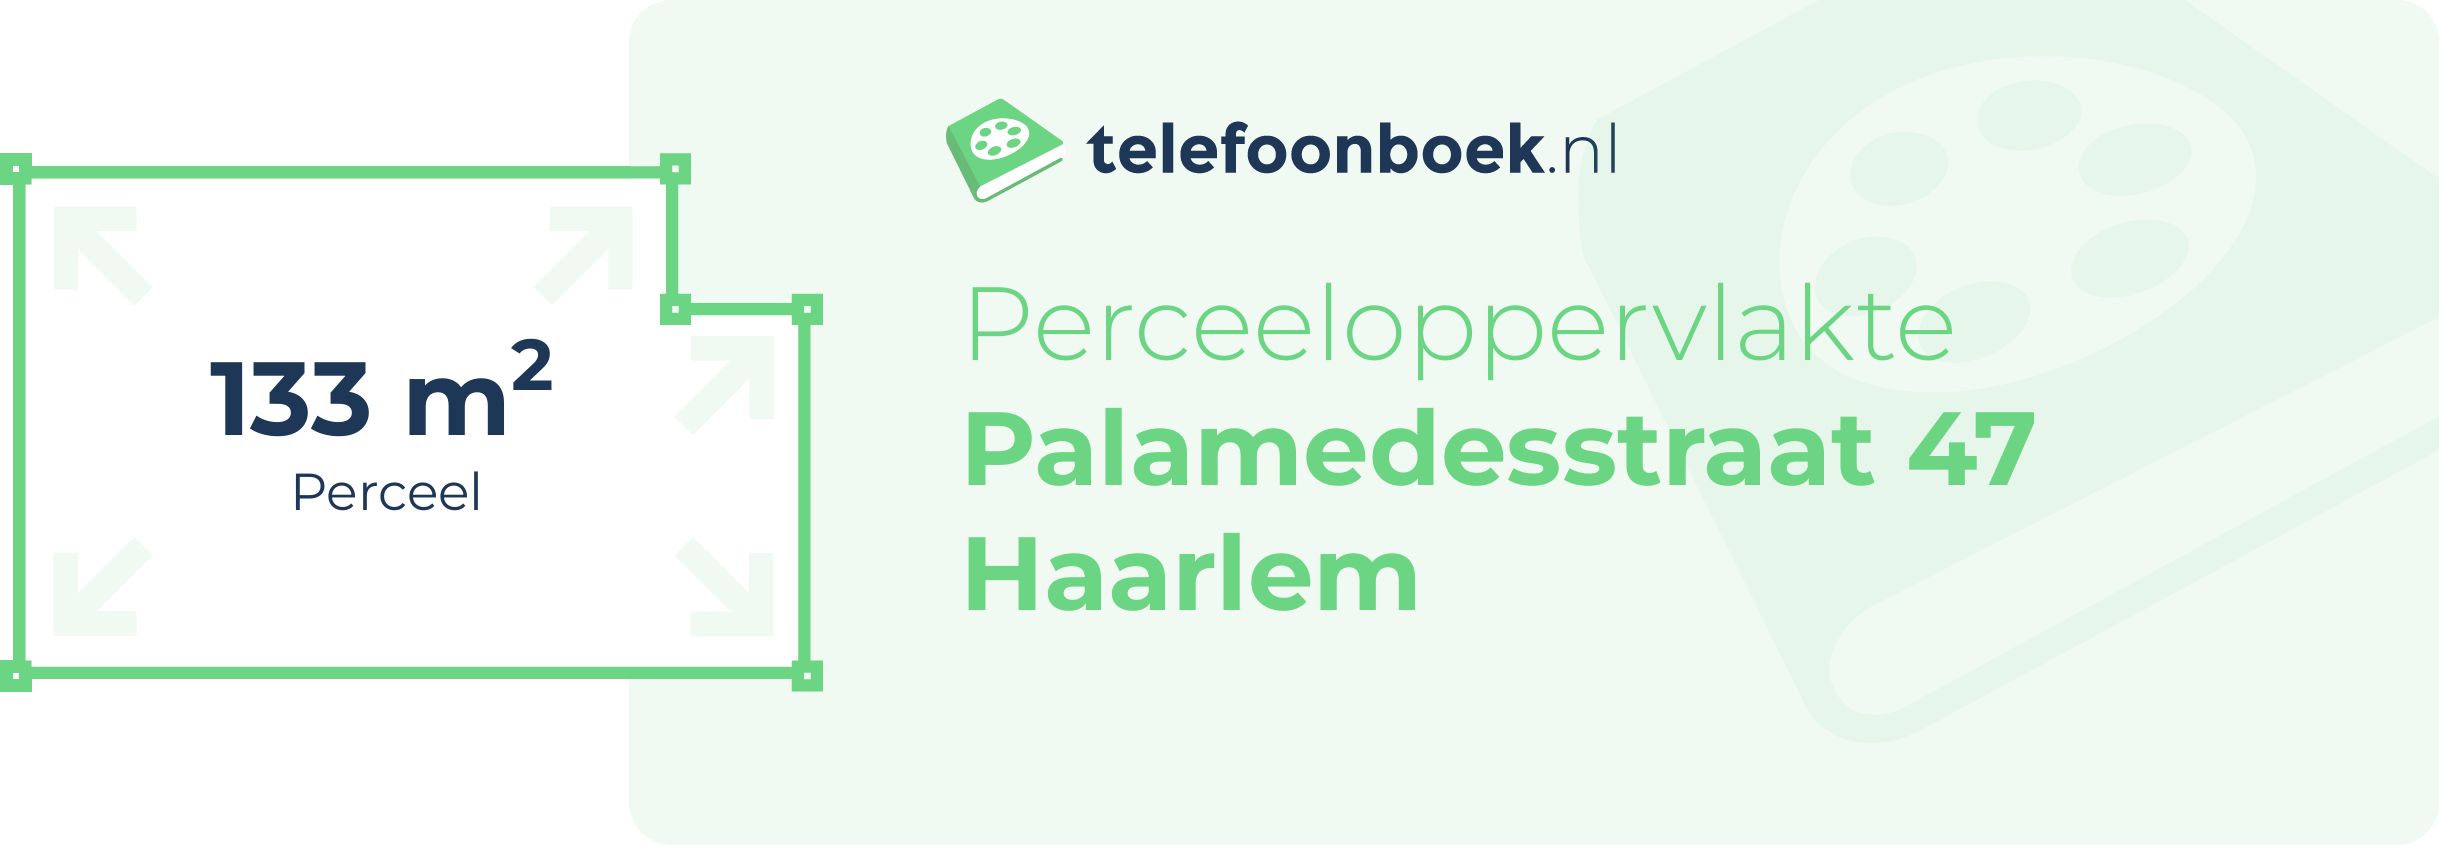 Perceeloppervlakte Palamedesstraat 47 Haarlem